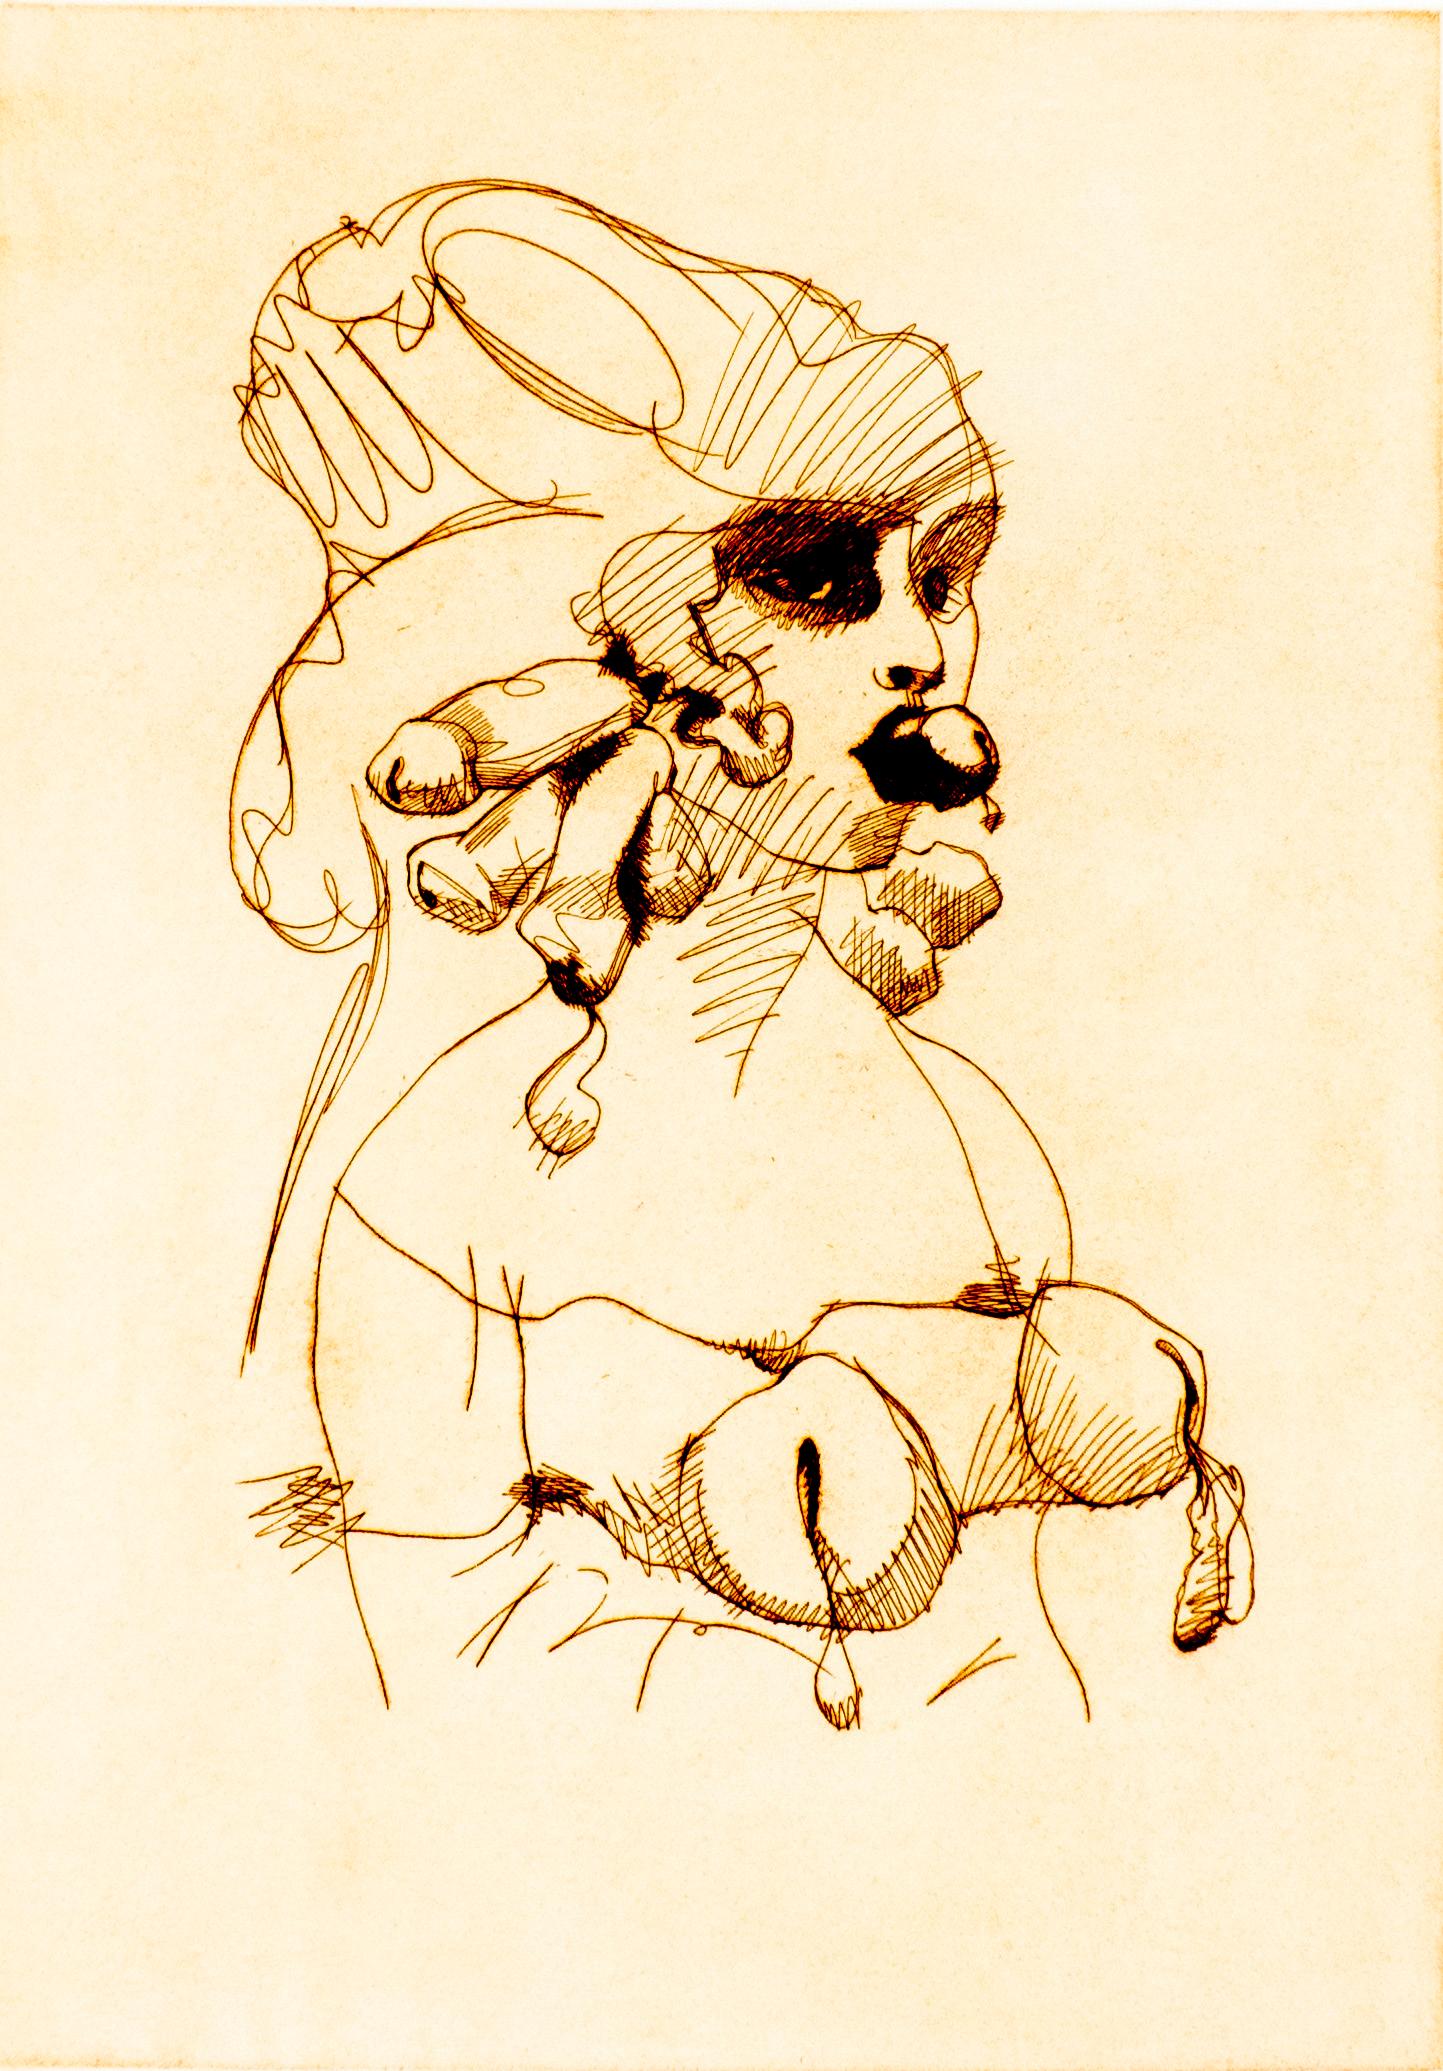 Imprimée en bleu astral, cette gravure représente une femme nue à partir de la taille. Émergeant de ses lèvres en arc de cupidon, l'extrémité d'un phallus imite un bâillon, et sur sa poitrine, deux lignes imitent des attaches fétichistes ou de